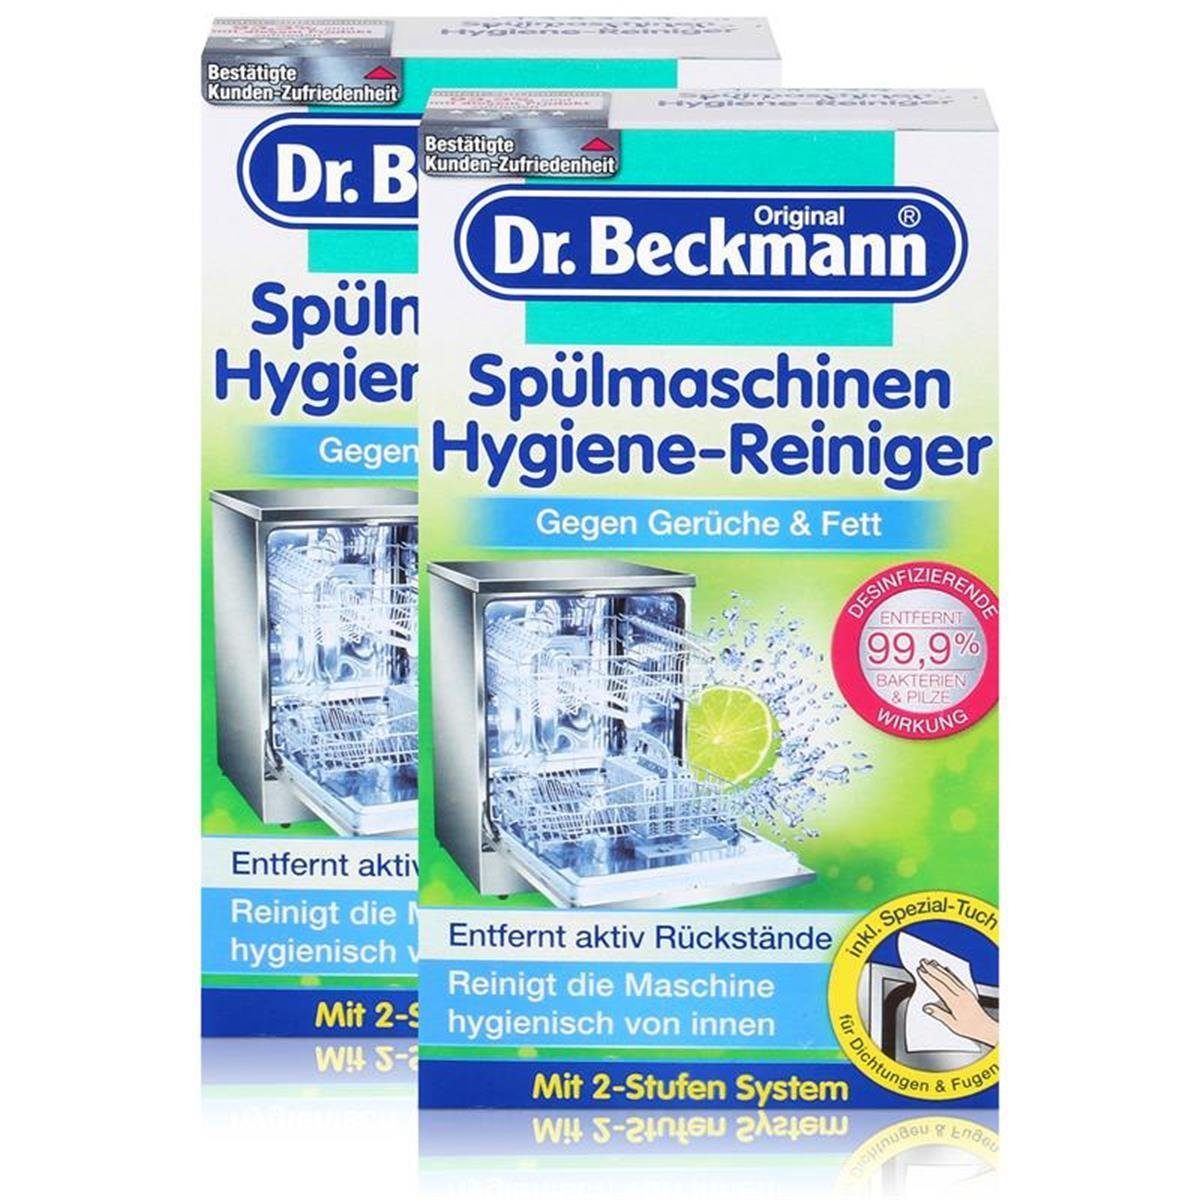 Dr. Beckmann 2x Dr. Beckmann Spülmaschinen Hygiene-Reiniger 75g – Entfernt aktiv Rü Spülmaschinenreiniger